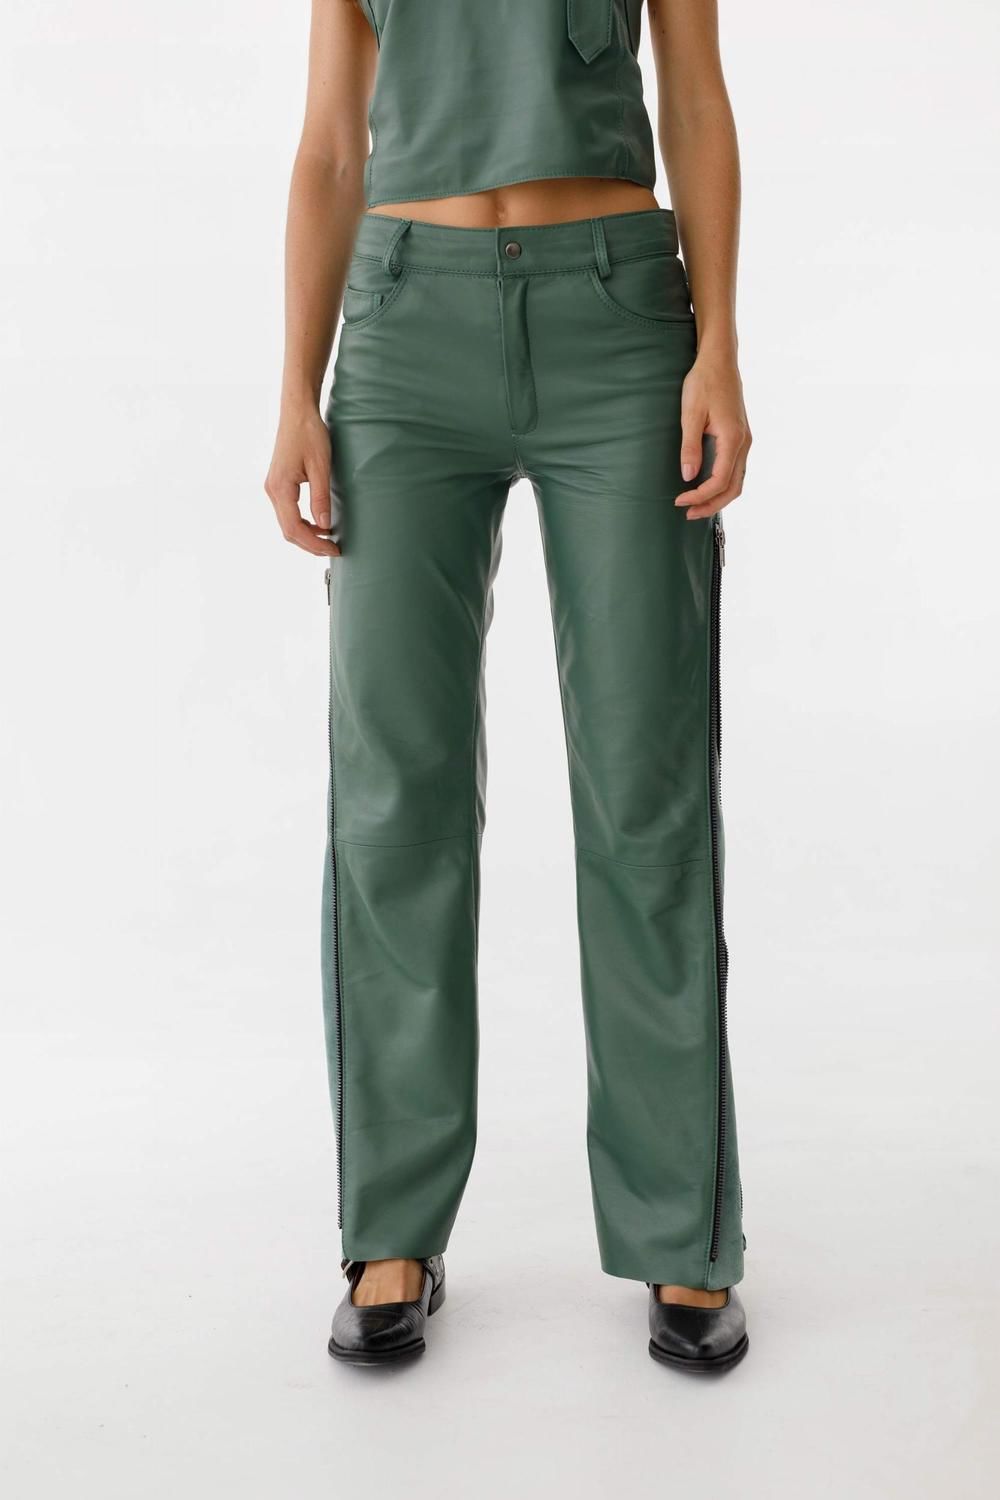 Pantalon Leather Golden verde l